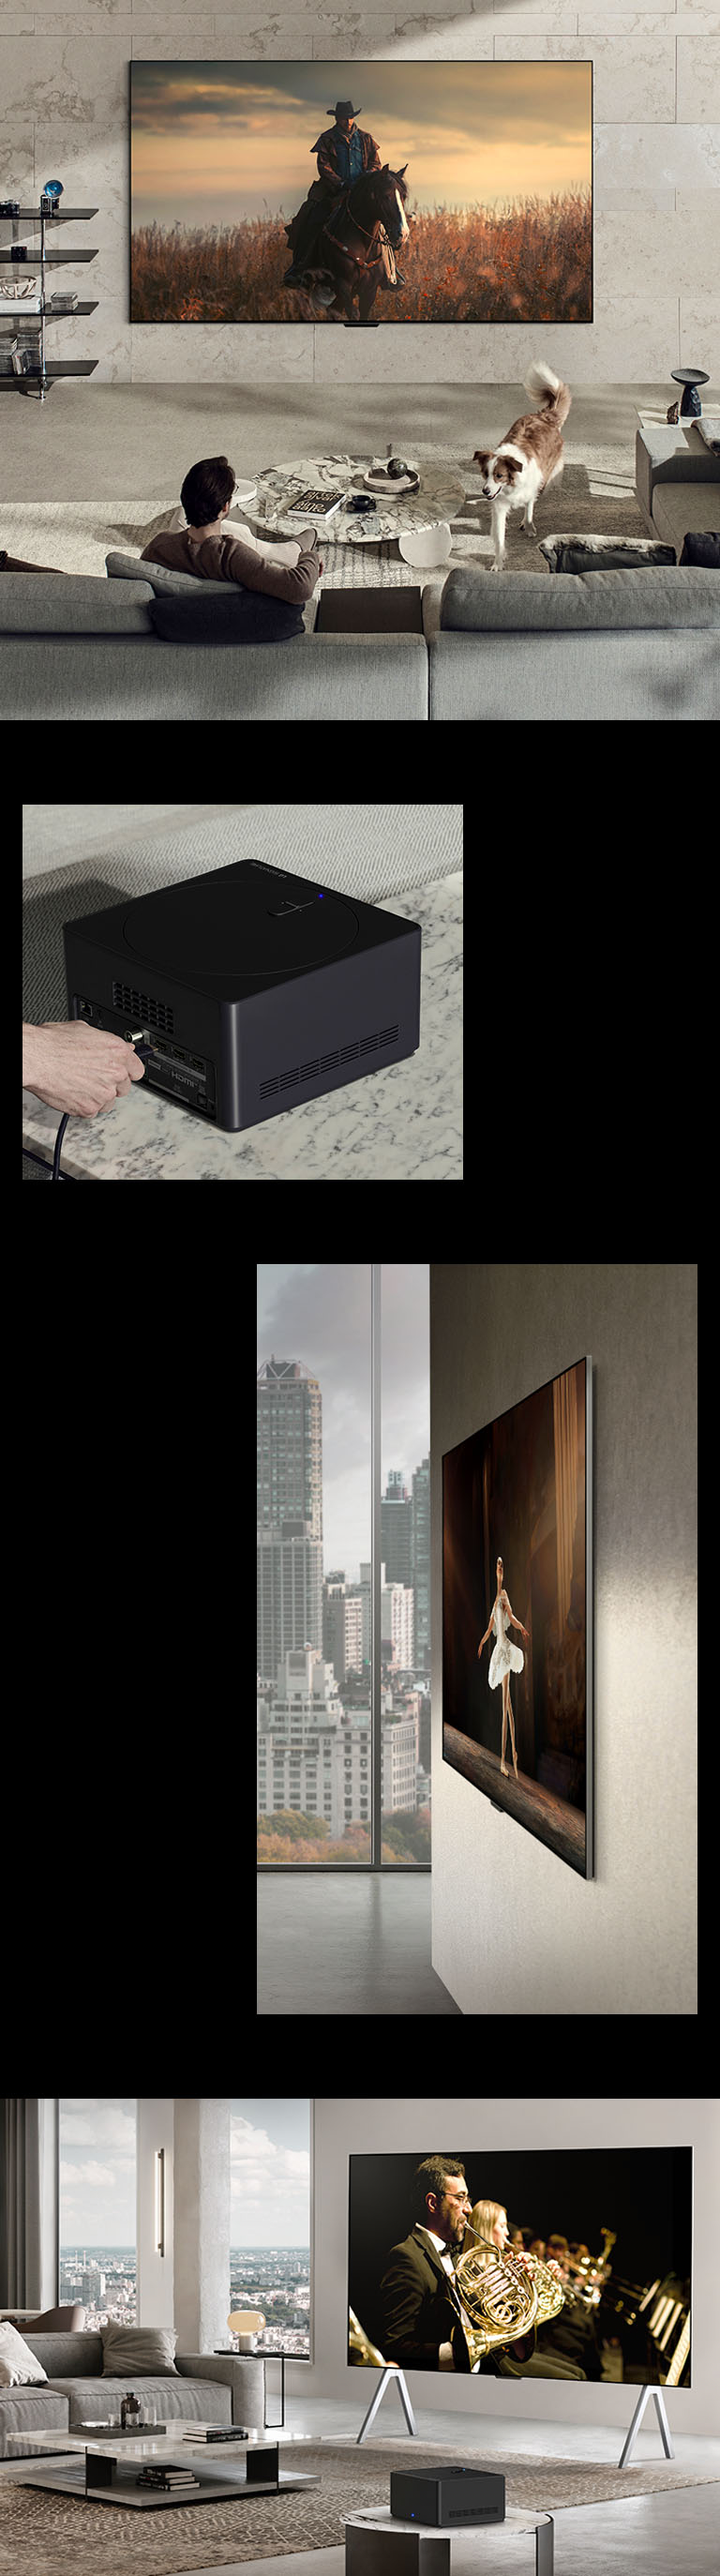 Ein Bild des LG OLED M3 an der Wand eines gemütlichen Zimmers mit einem Hund und einer Person, die die stromlinienförmige Aussicht genießt. Eine Nahaufnahme einer Person, die ein Kabel an die Zero Connect Box anschließt. Eine Seitenansicht des LG OLED M3 mit seinen unglaublich schlanken Abmessungen. Eine schräge Ansicht des LG OLED M3 auf einem Bodenständer in einer modernen Stadtwohnung mit der Zero Connect Box auf einem Marmorbeistelltisch.